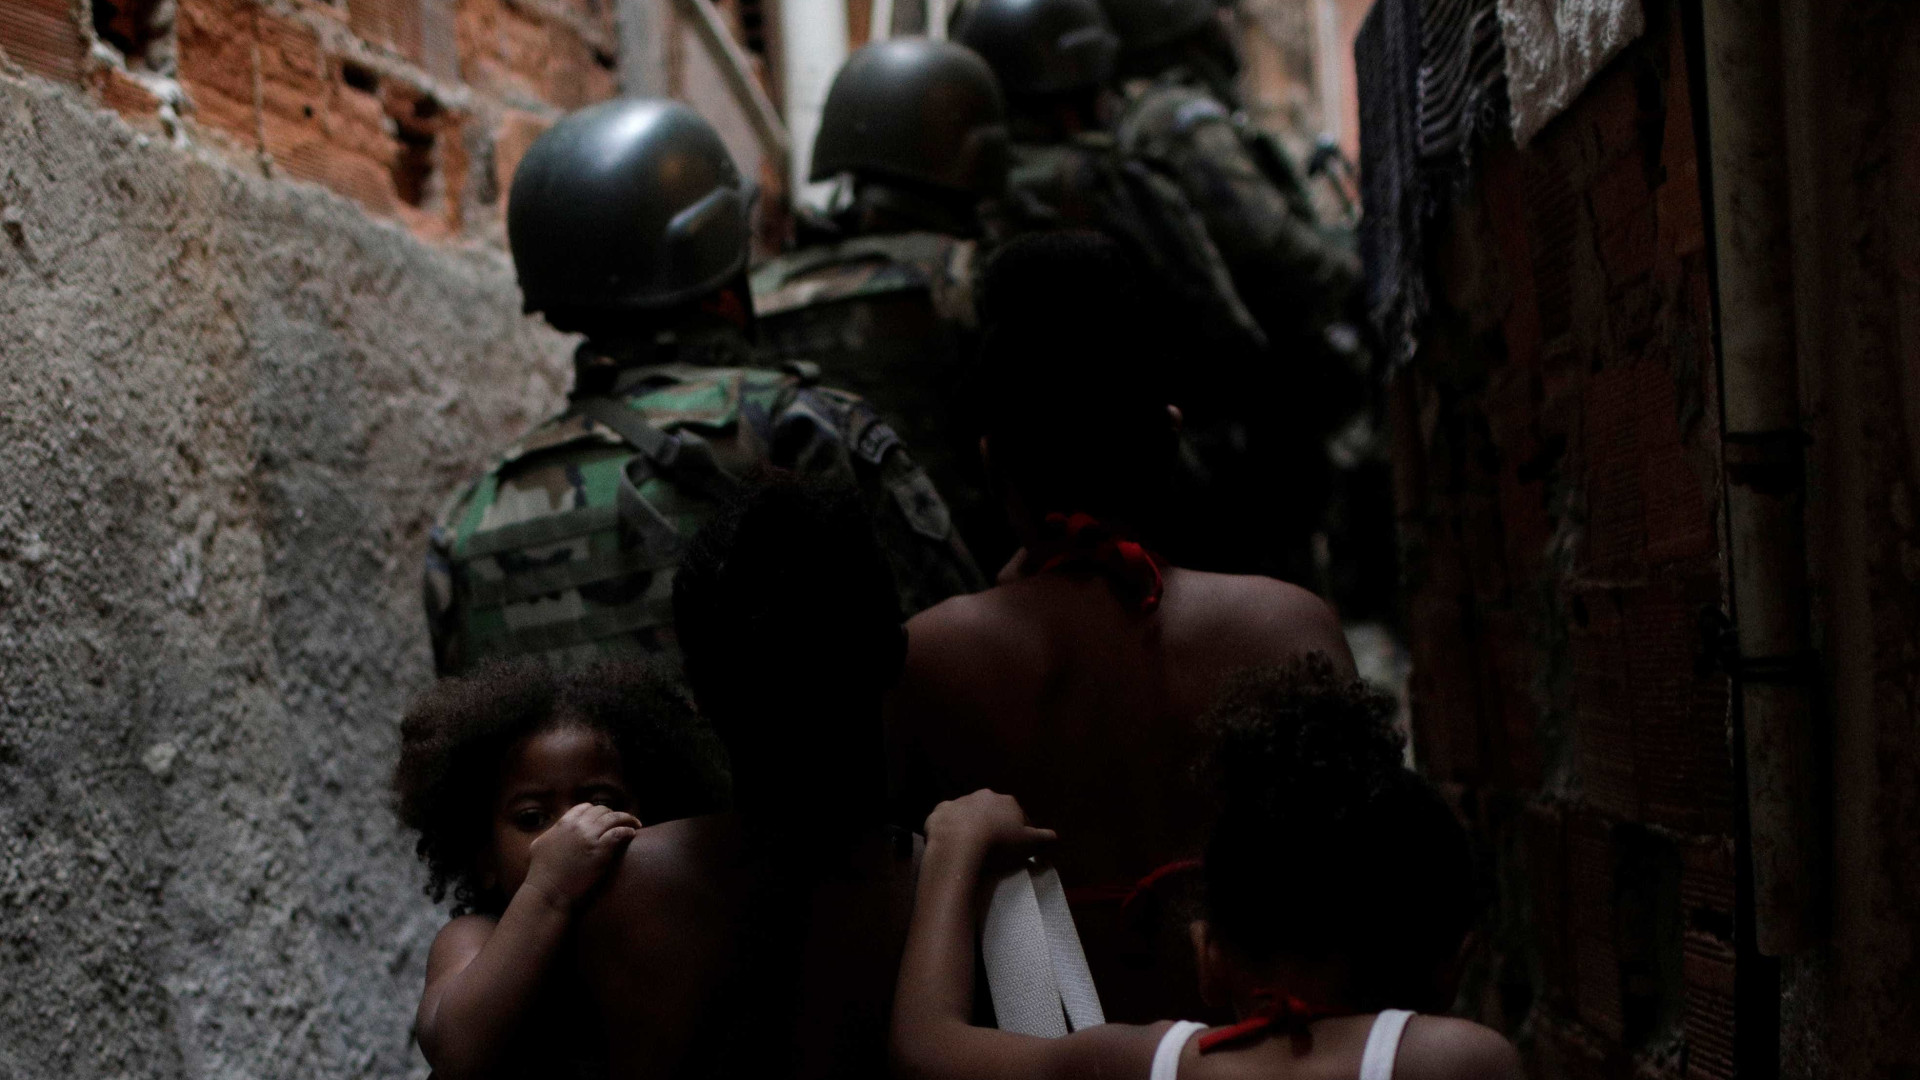 Polícia Civil reduz de 29 para 28 o número de mortos no Jacarezinho, no Rio